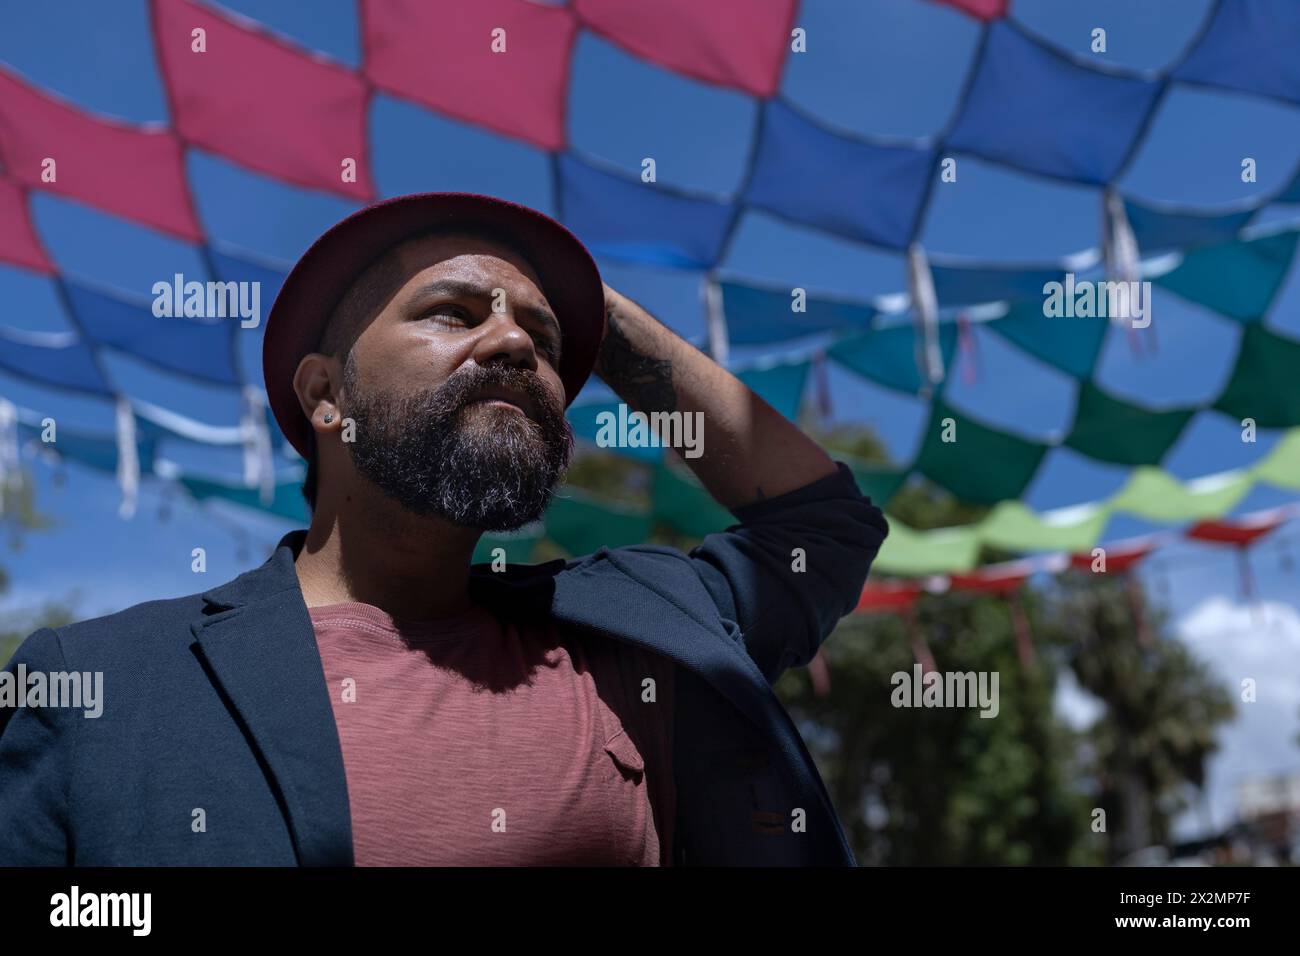 Porträt eines lateinamerikanischen Künstlers mit Bart, Hut und Jacke. Hintergrund farbenfroher Flaggen. Reale Menschen verstehen. Stockfoto